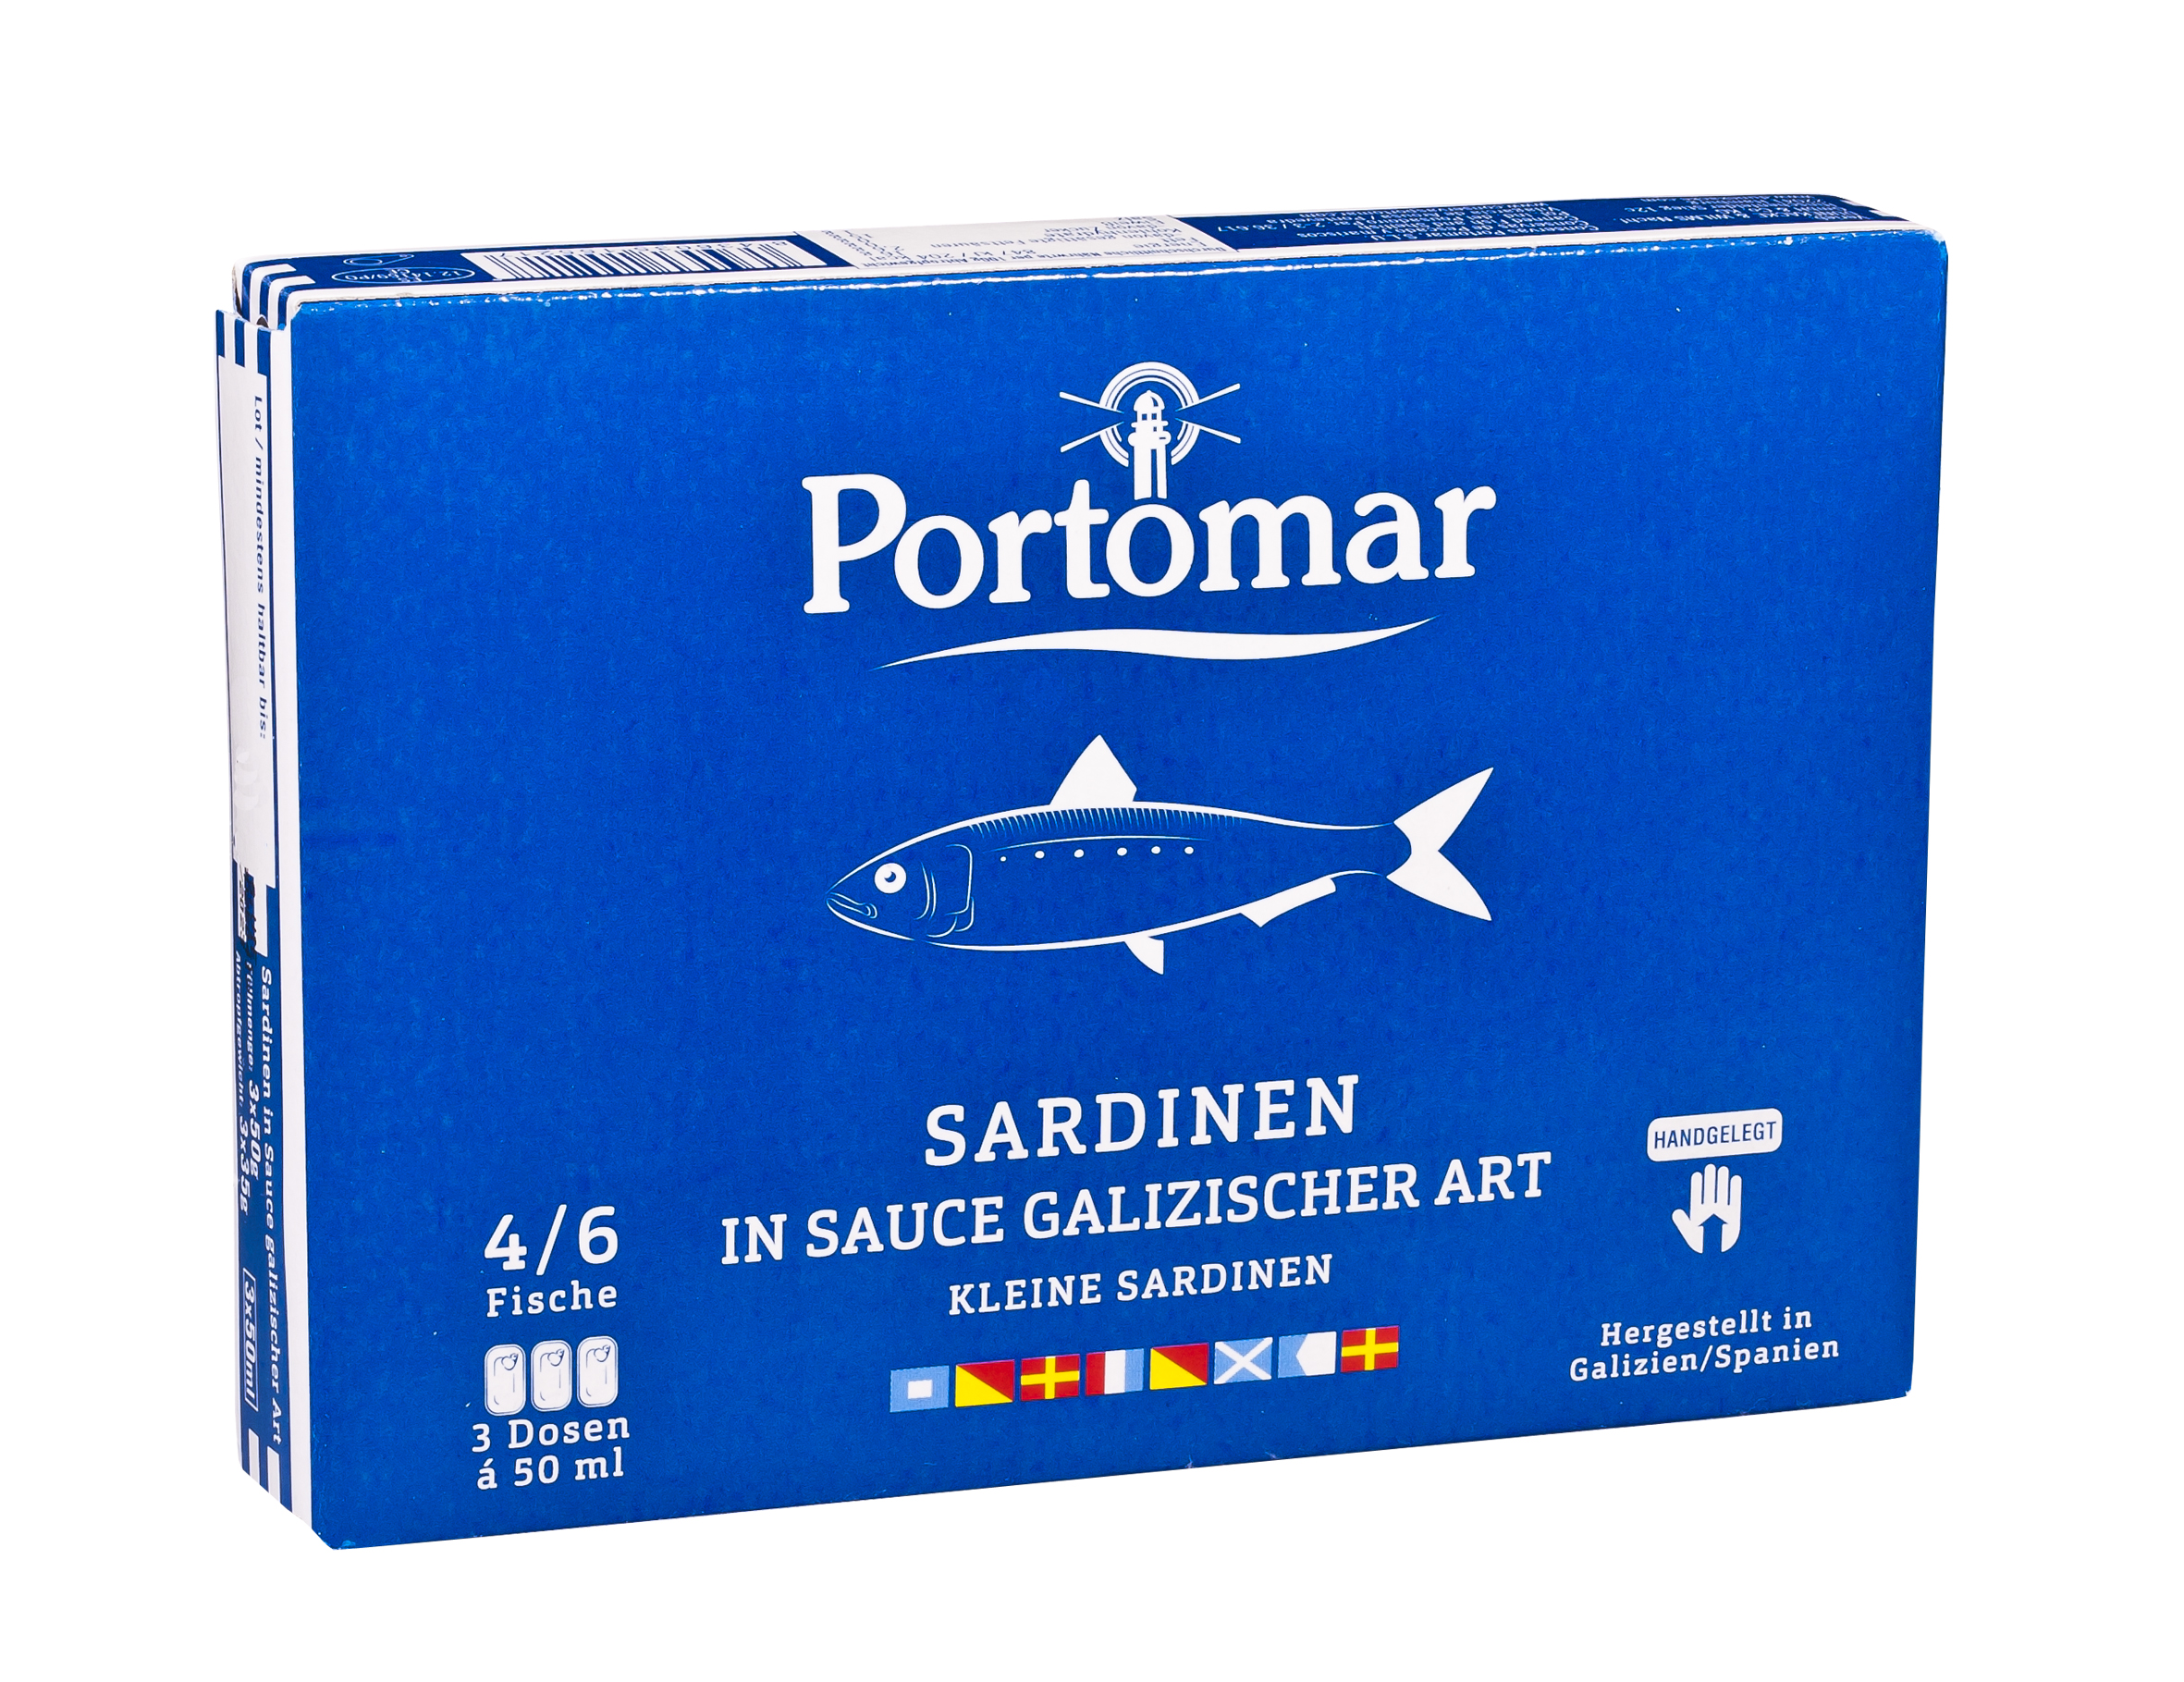  Sardinen in galizischer Sauce er